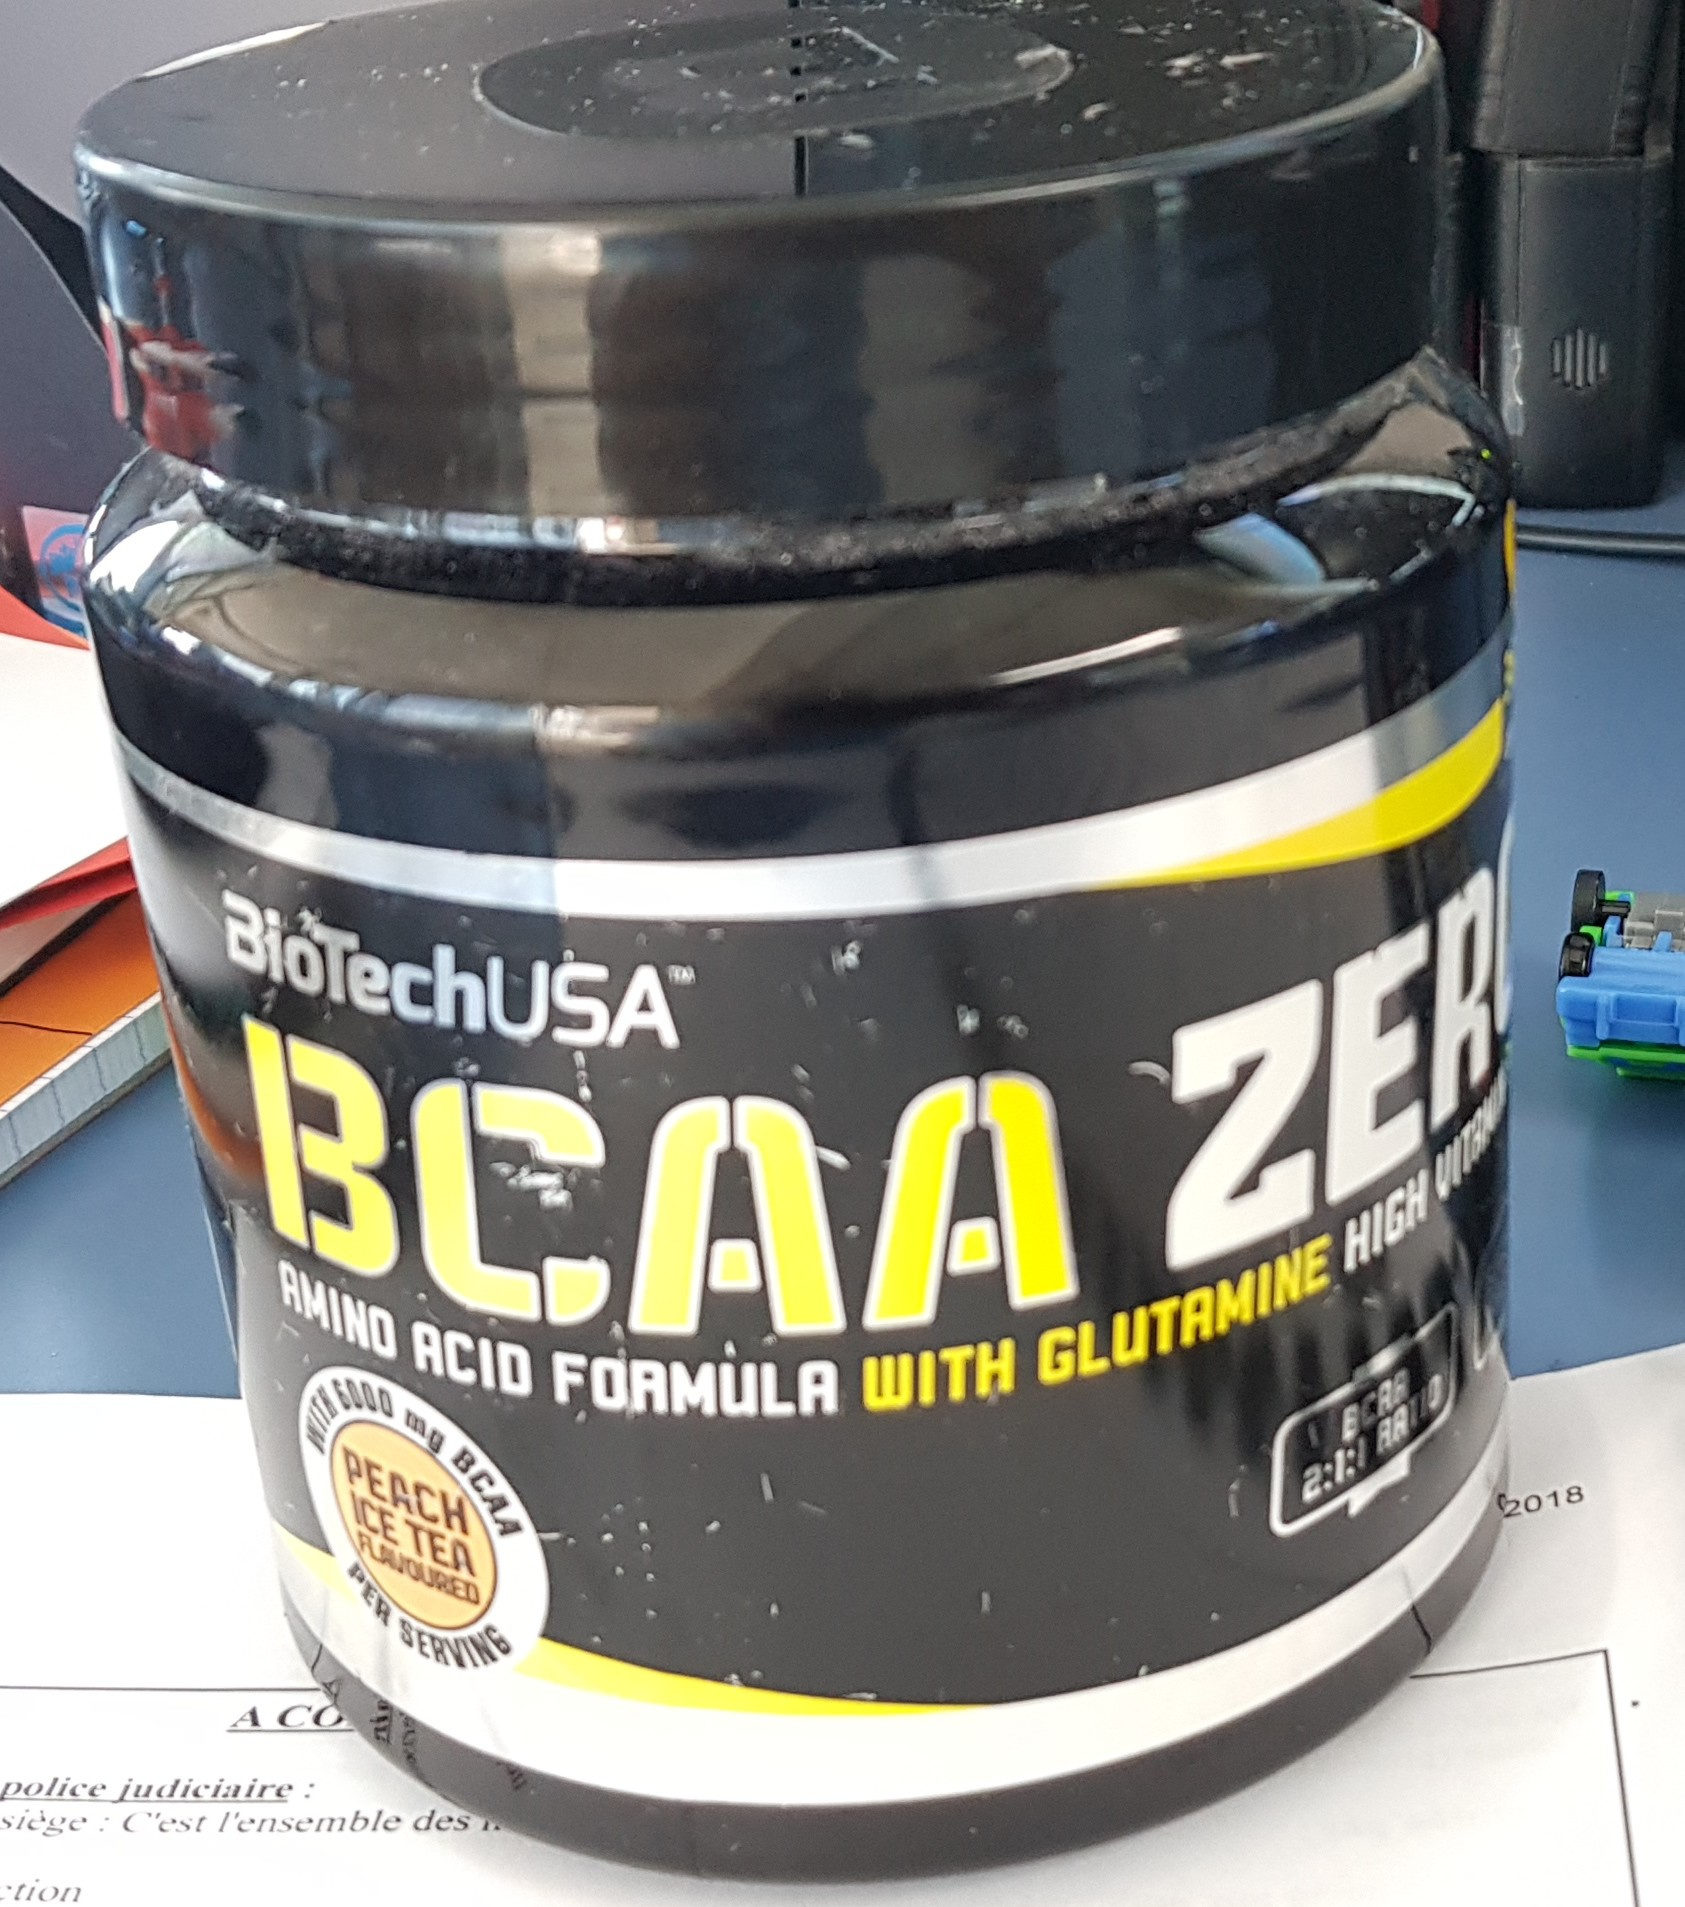 BCCA ZERO - Product